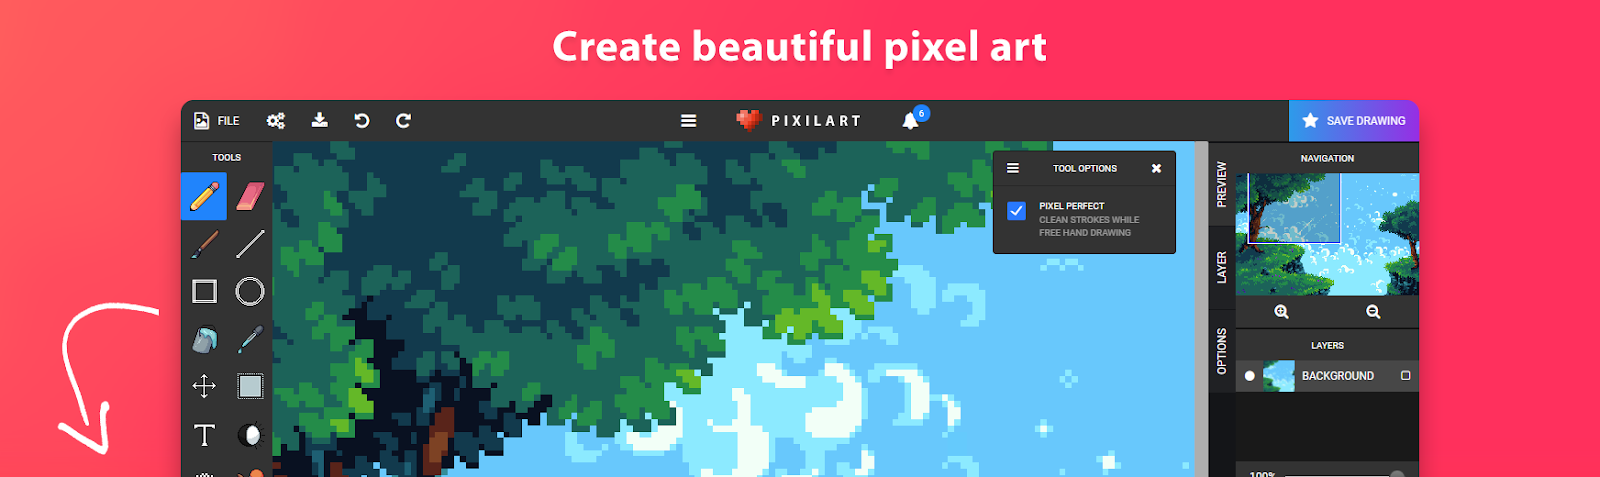 Smart Pixel Art Creator @